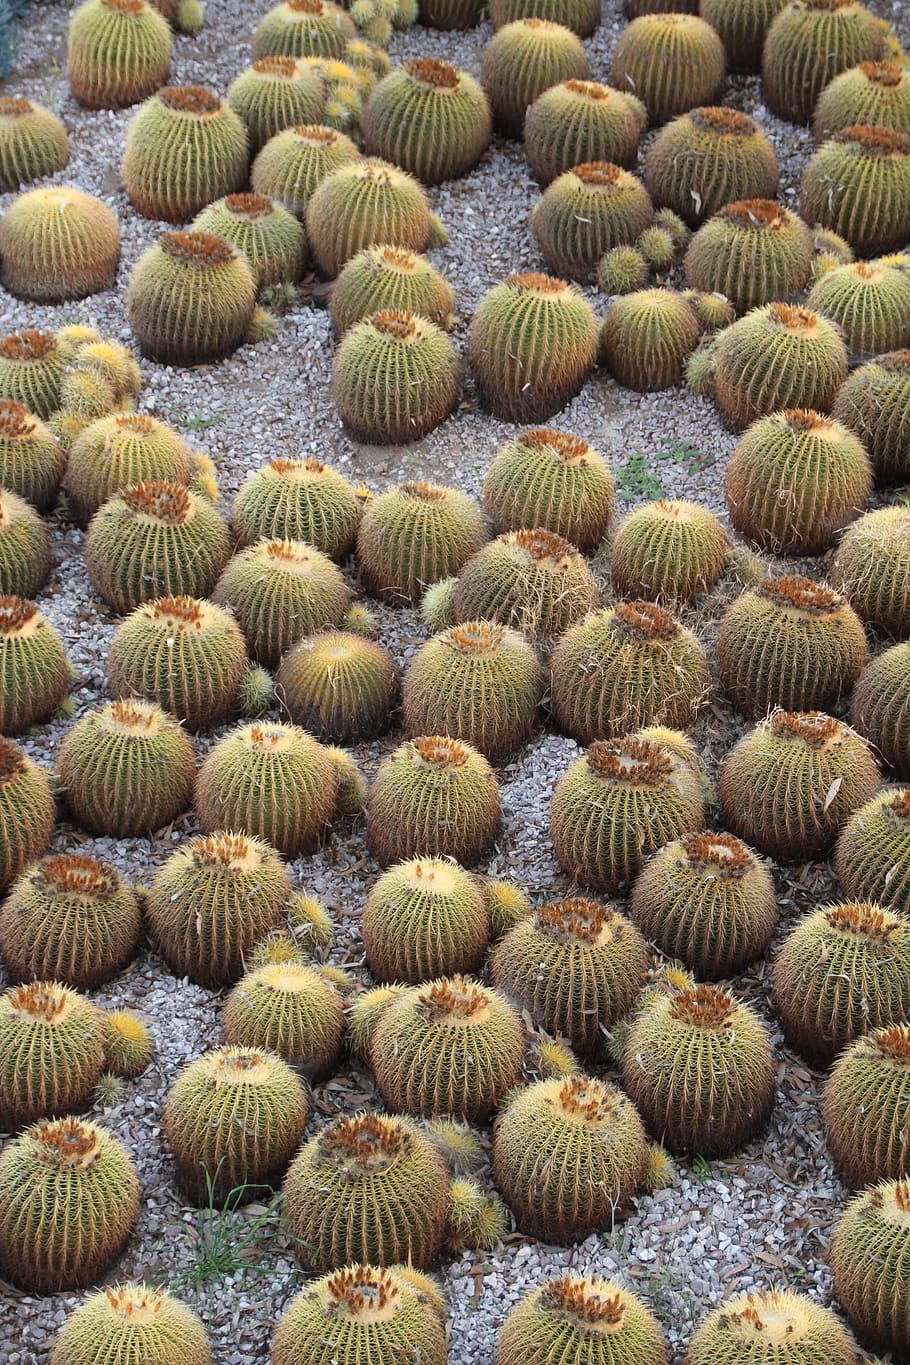 Cactus, California, Plantas, desierto, natural, seco, suroeste, salvaje, flora, suculenta